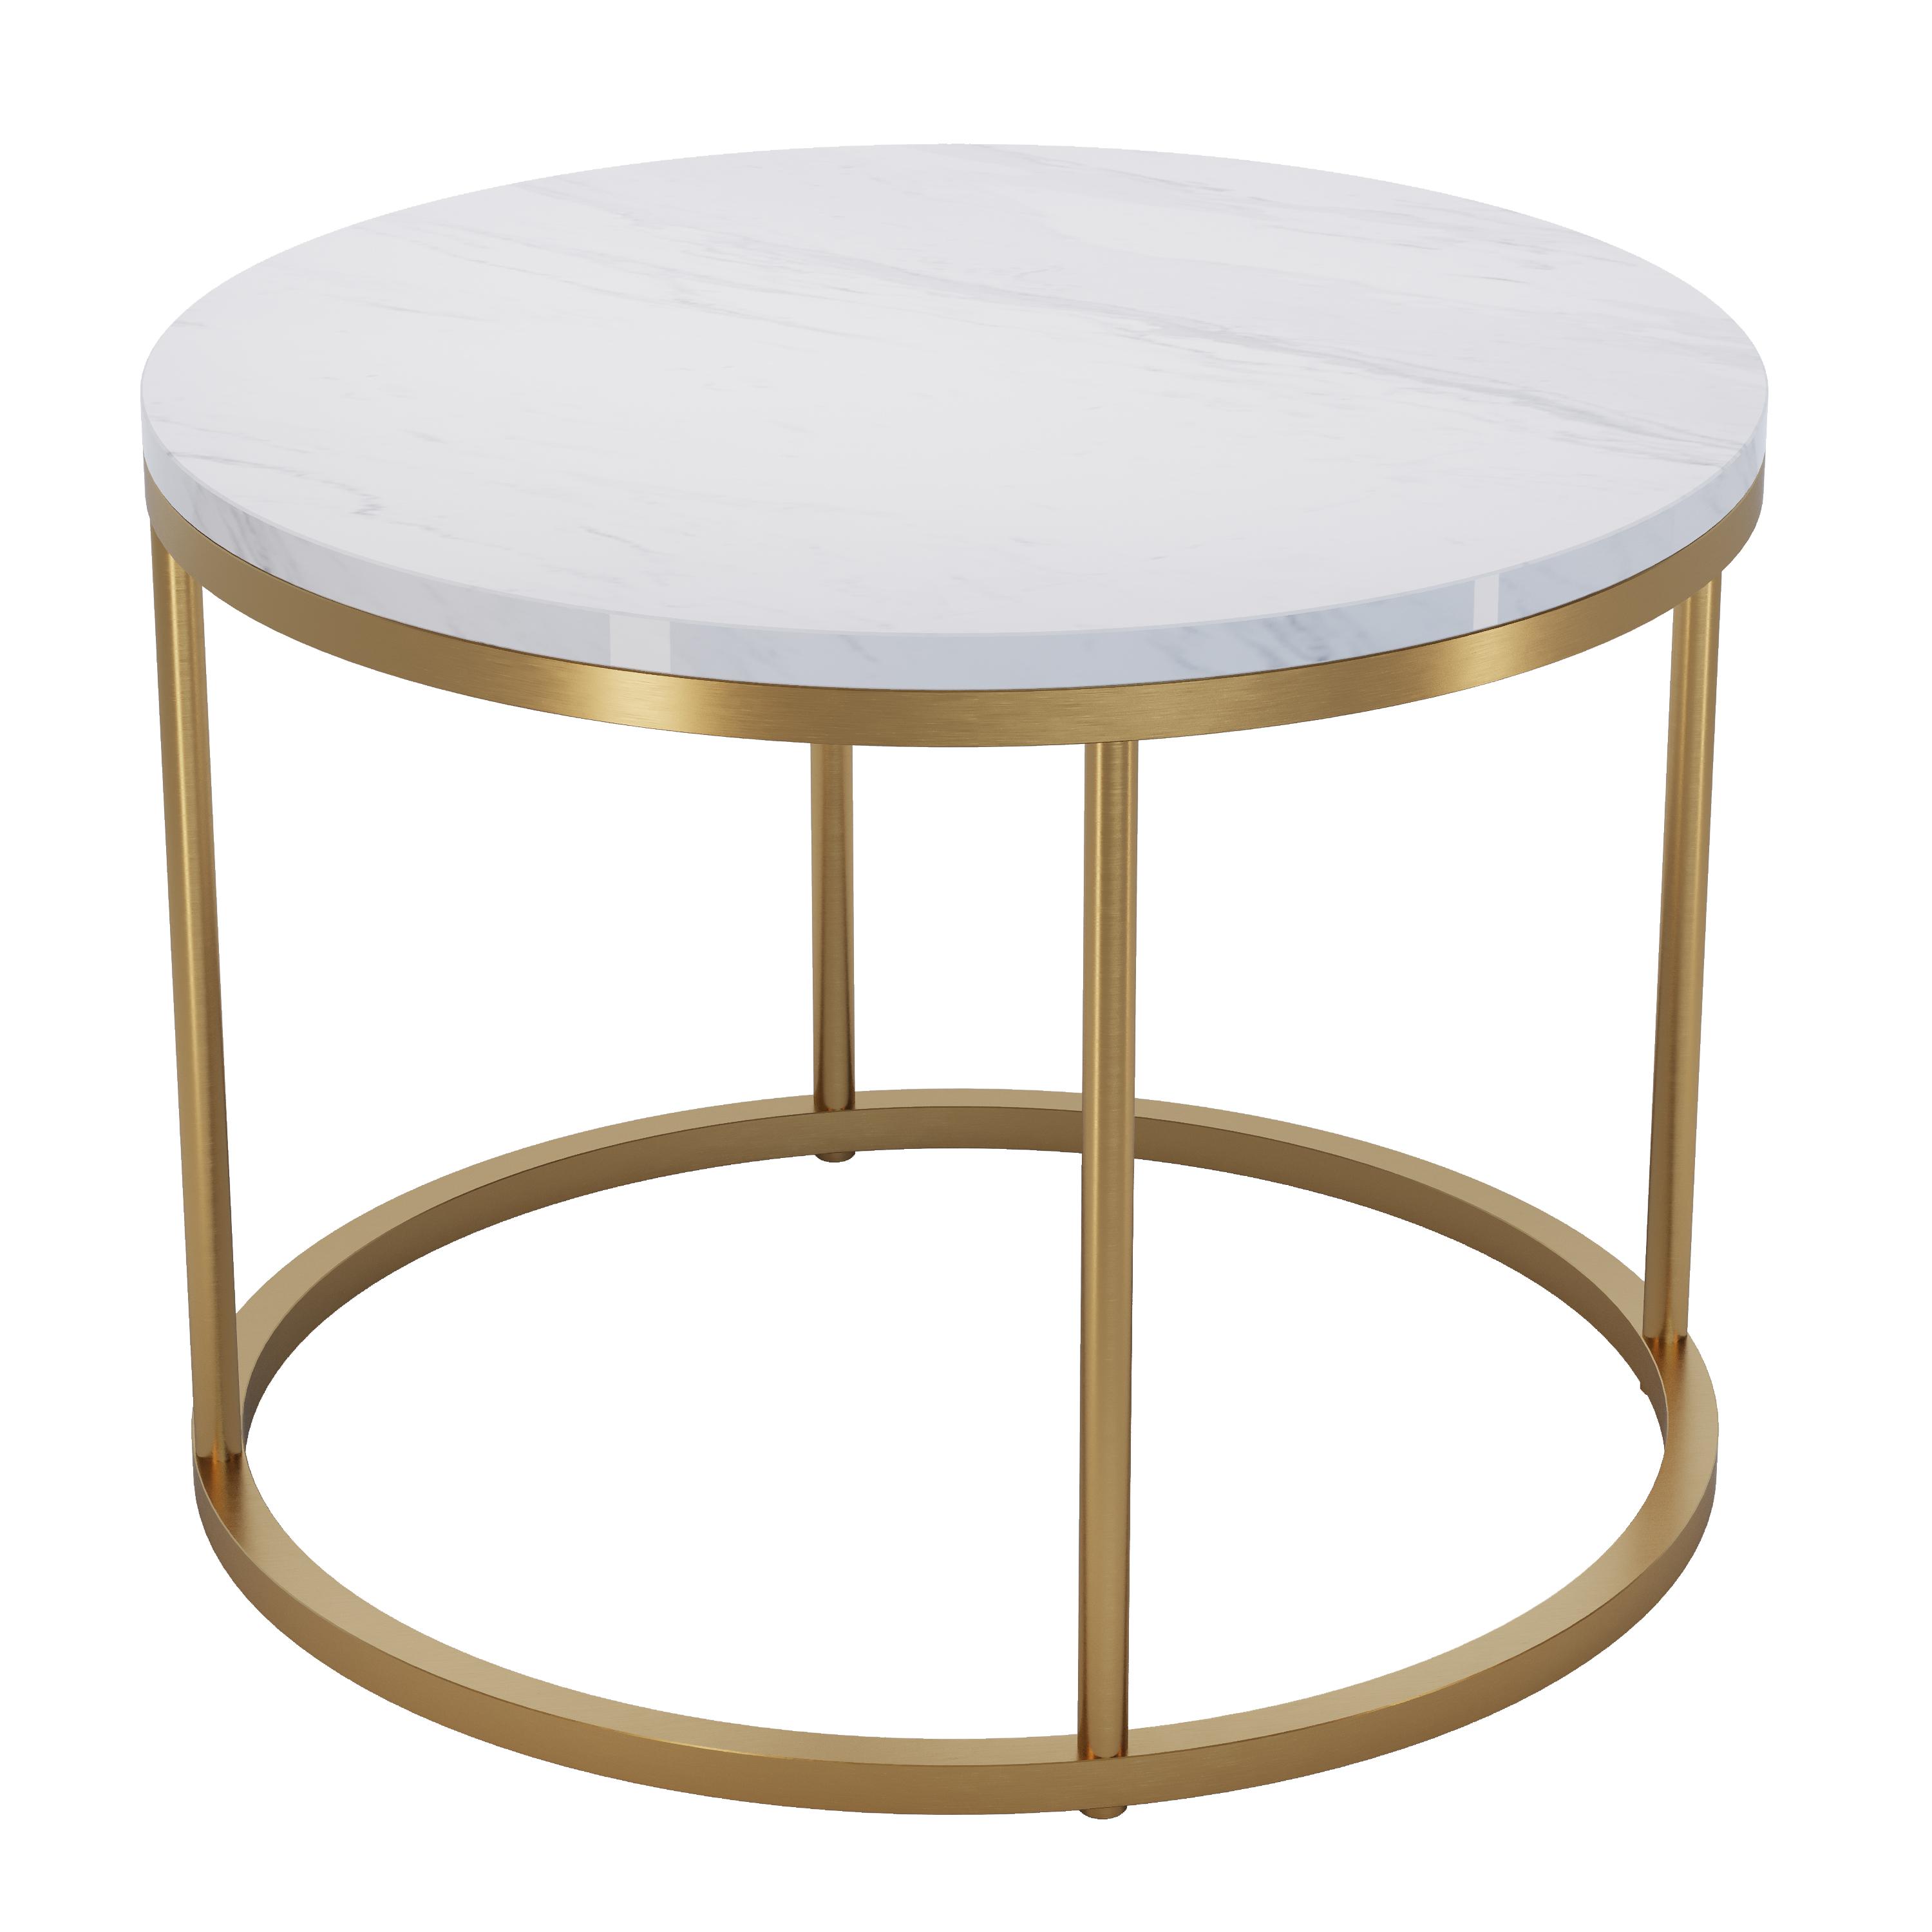 Marble table, SKU. 26529 by Pikartlights 3d model